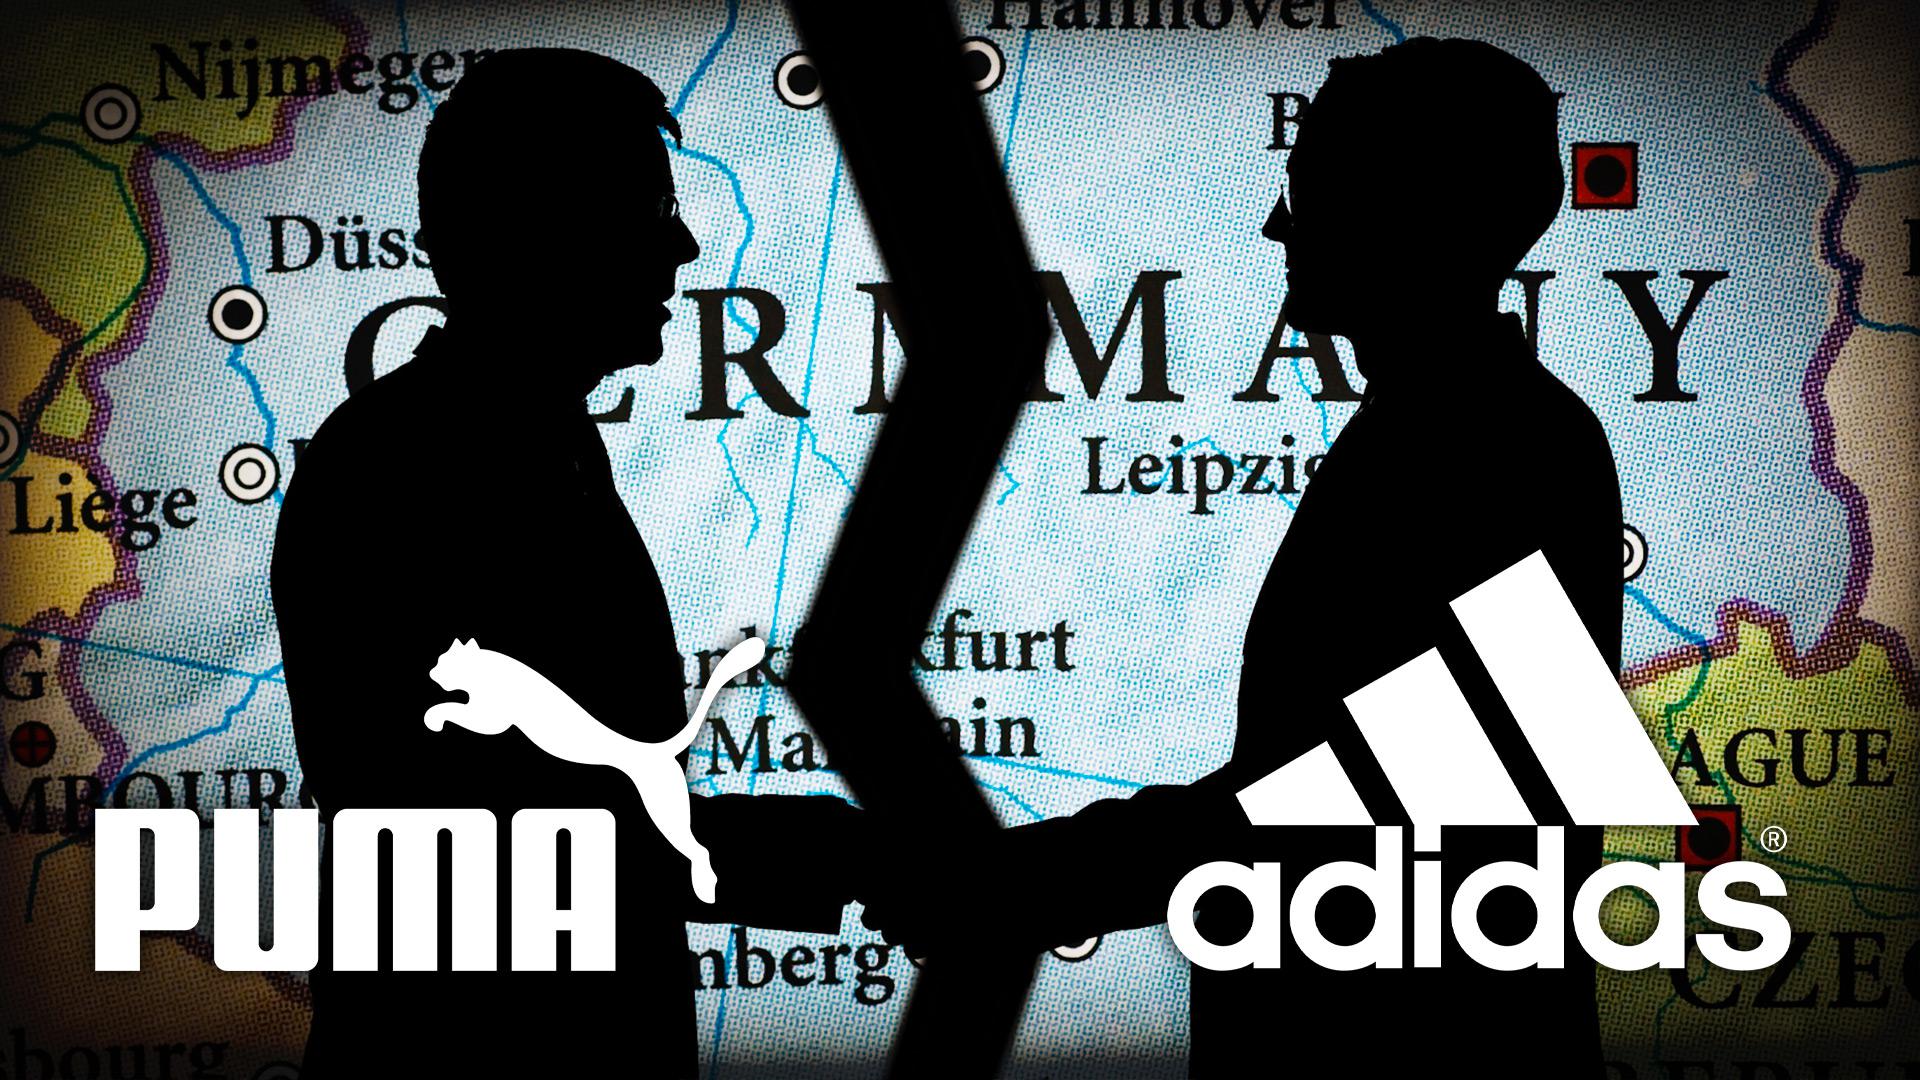 story behind adidas and puma